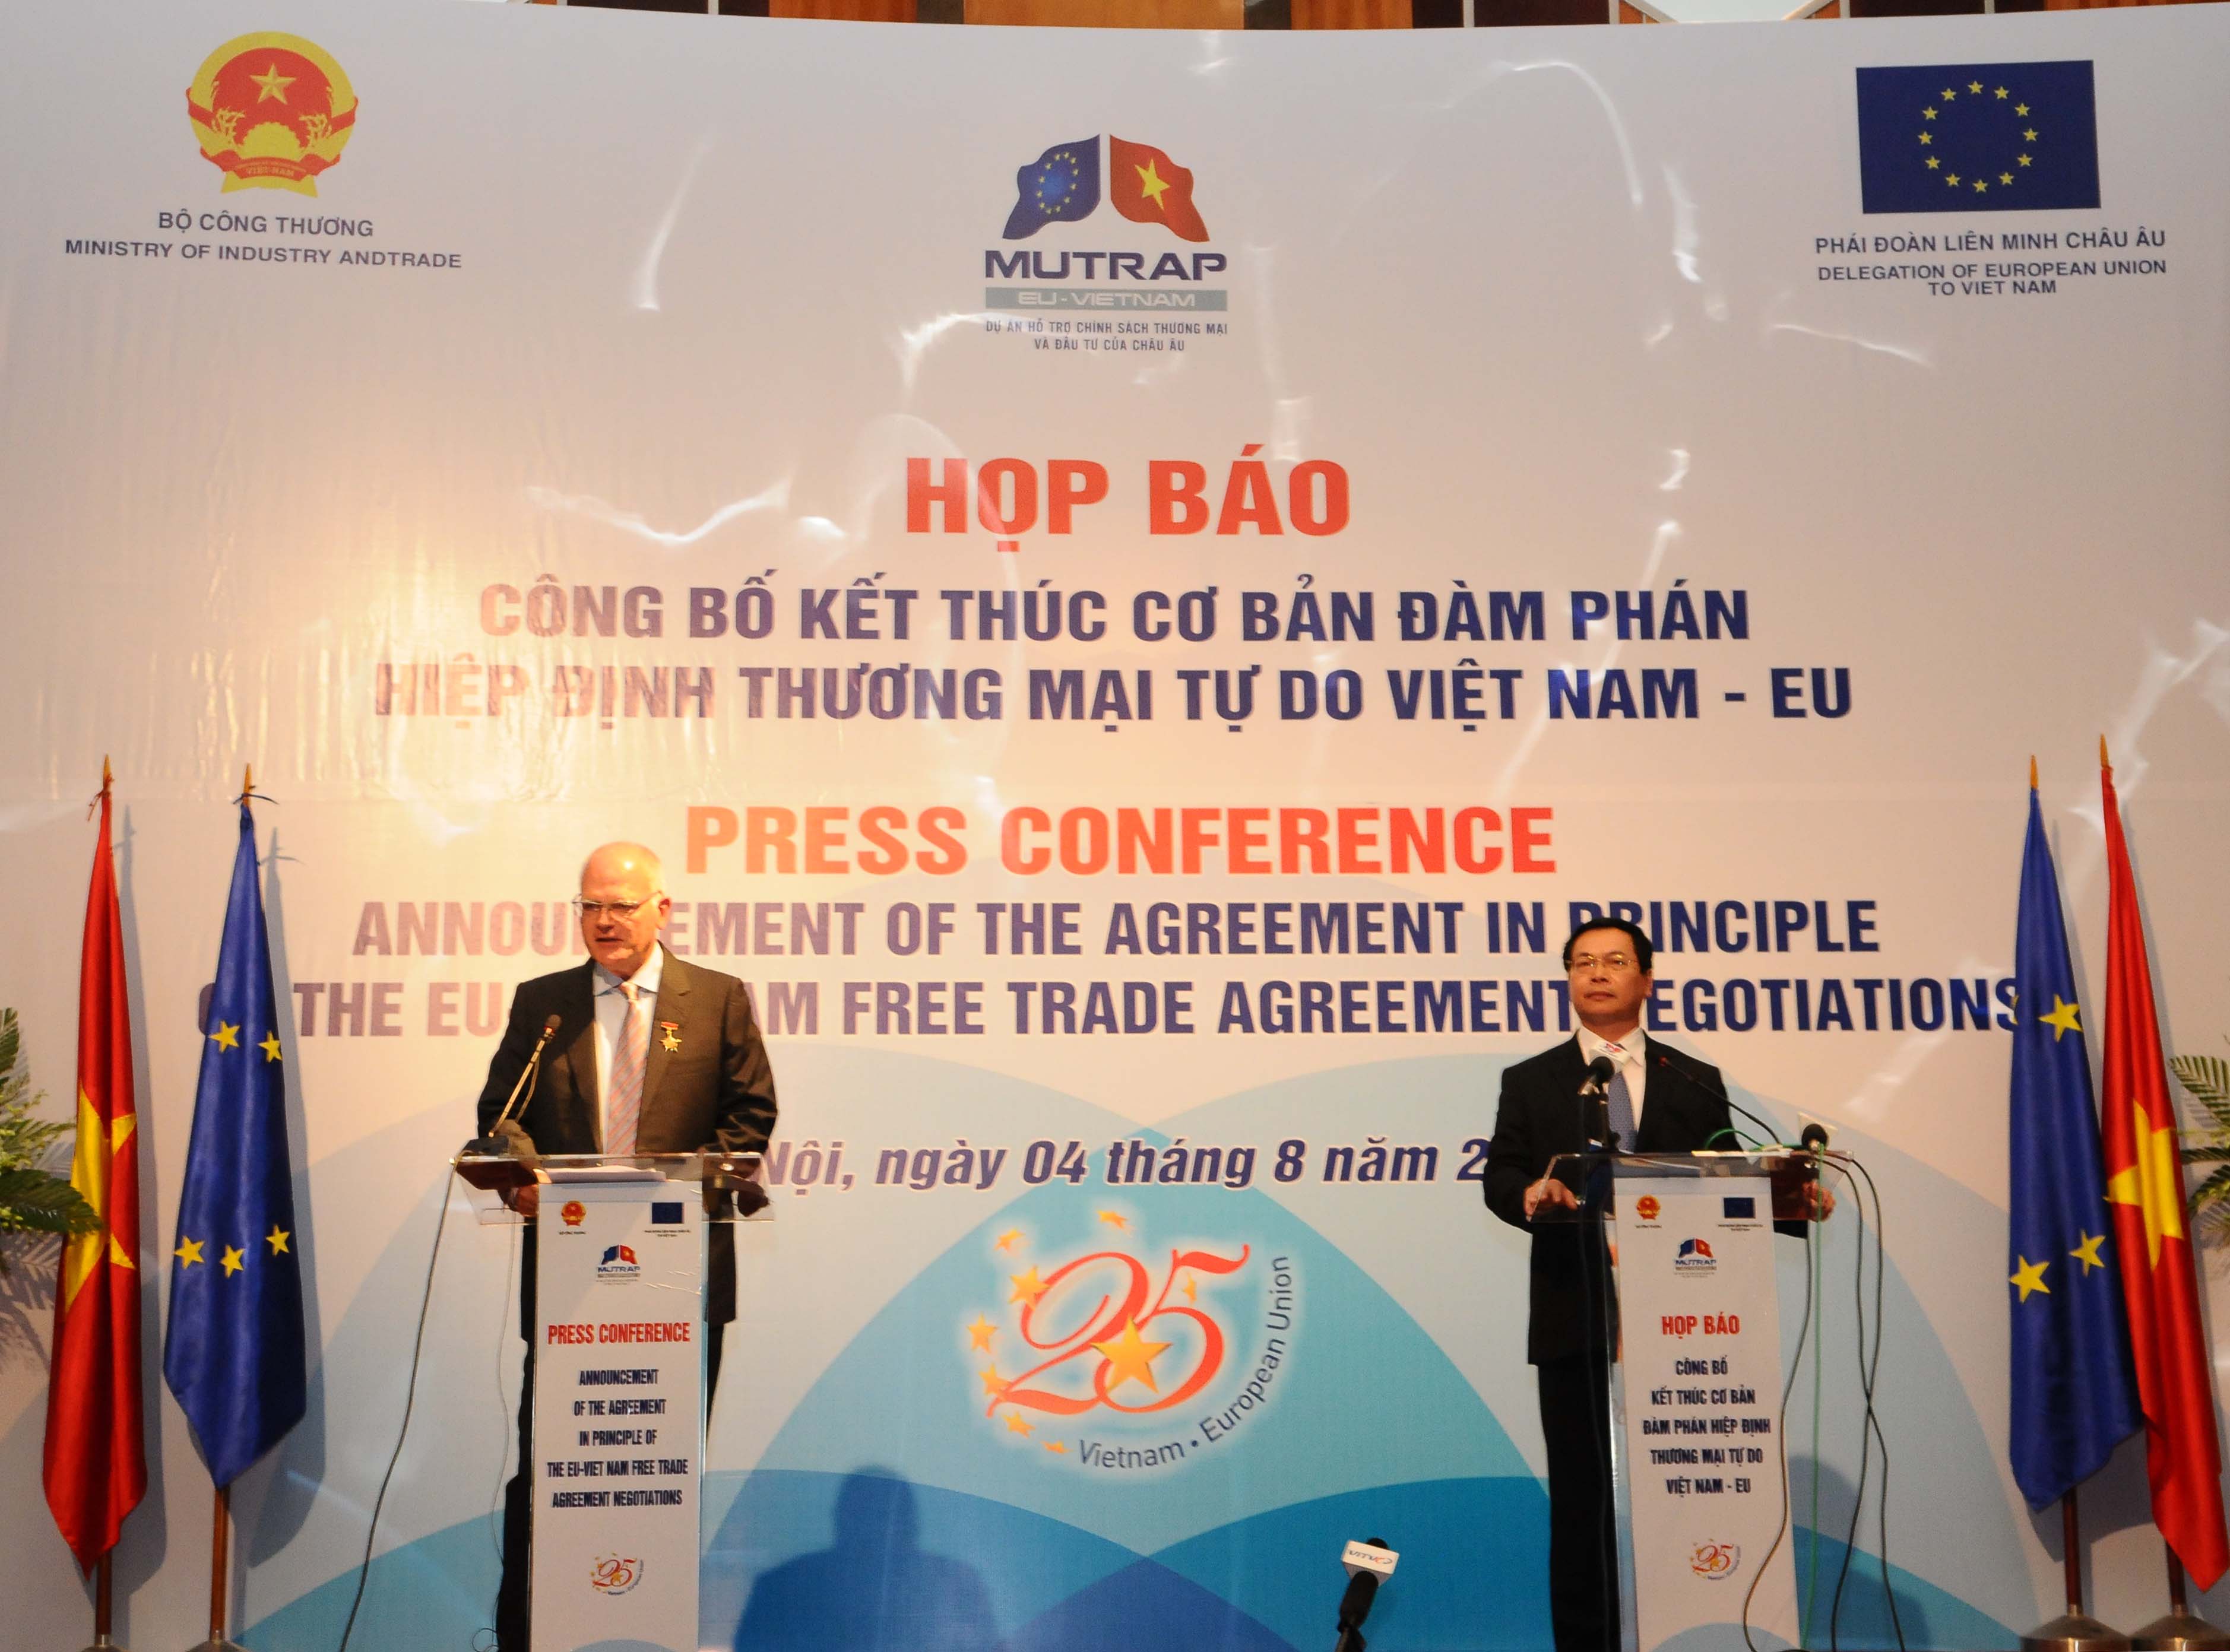 Tuyên bố kết thúc cơ bản đàm phán FTA Việt Nam - EU